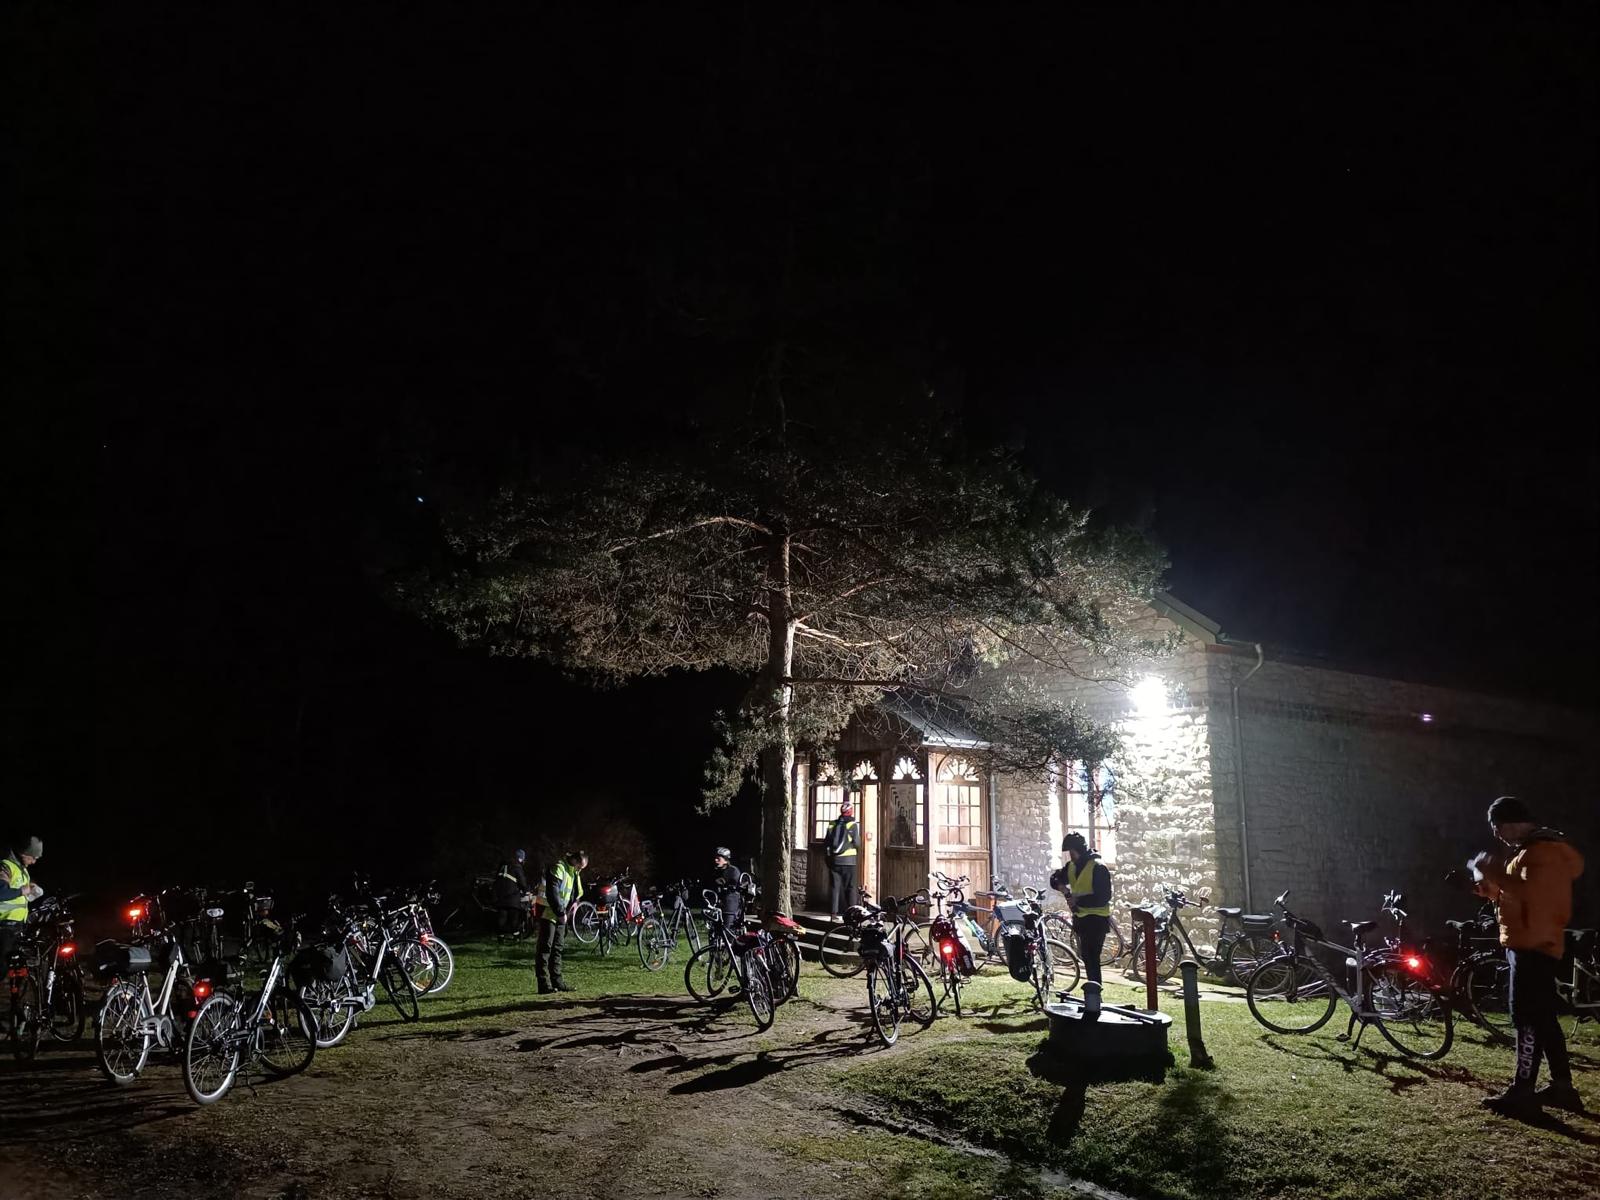 Rowerowa Droga Krzyżowa | Duża, murowana kaplica oświetlona latarnią. Przed nią drzewo i kilkanaście zaparkowanych rowerów, między nimi stoi kilka osób.Zdjęcie nocne.jpg